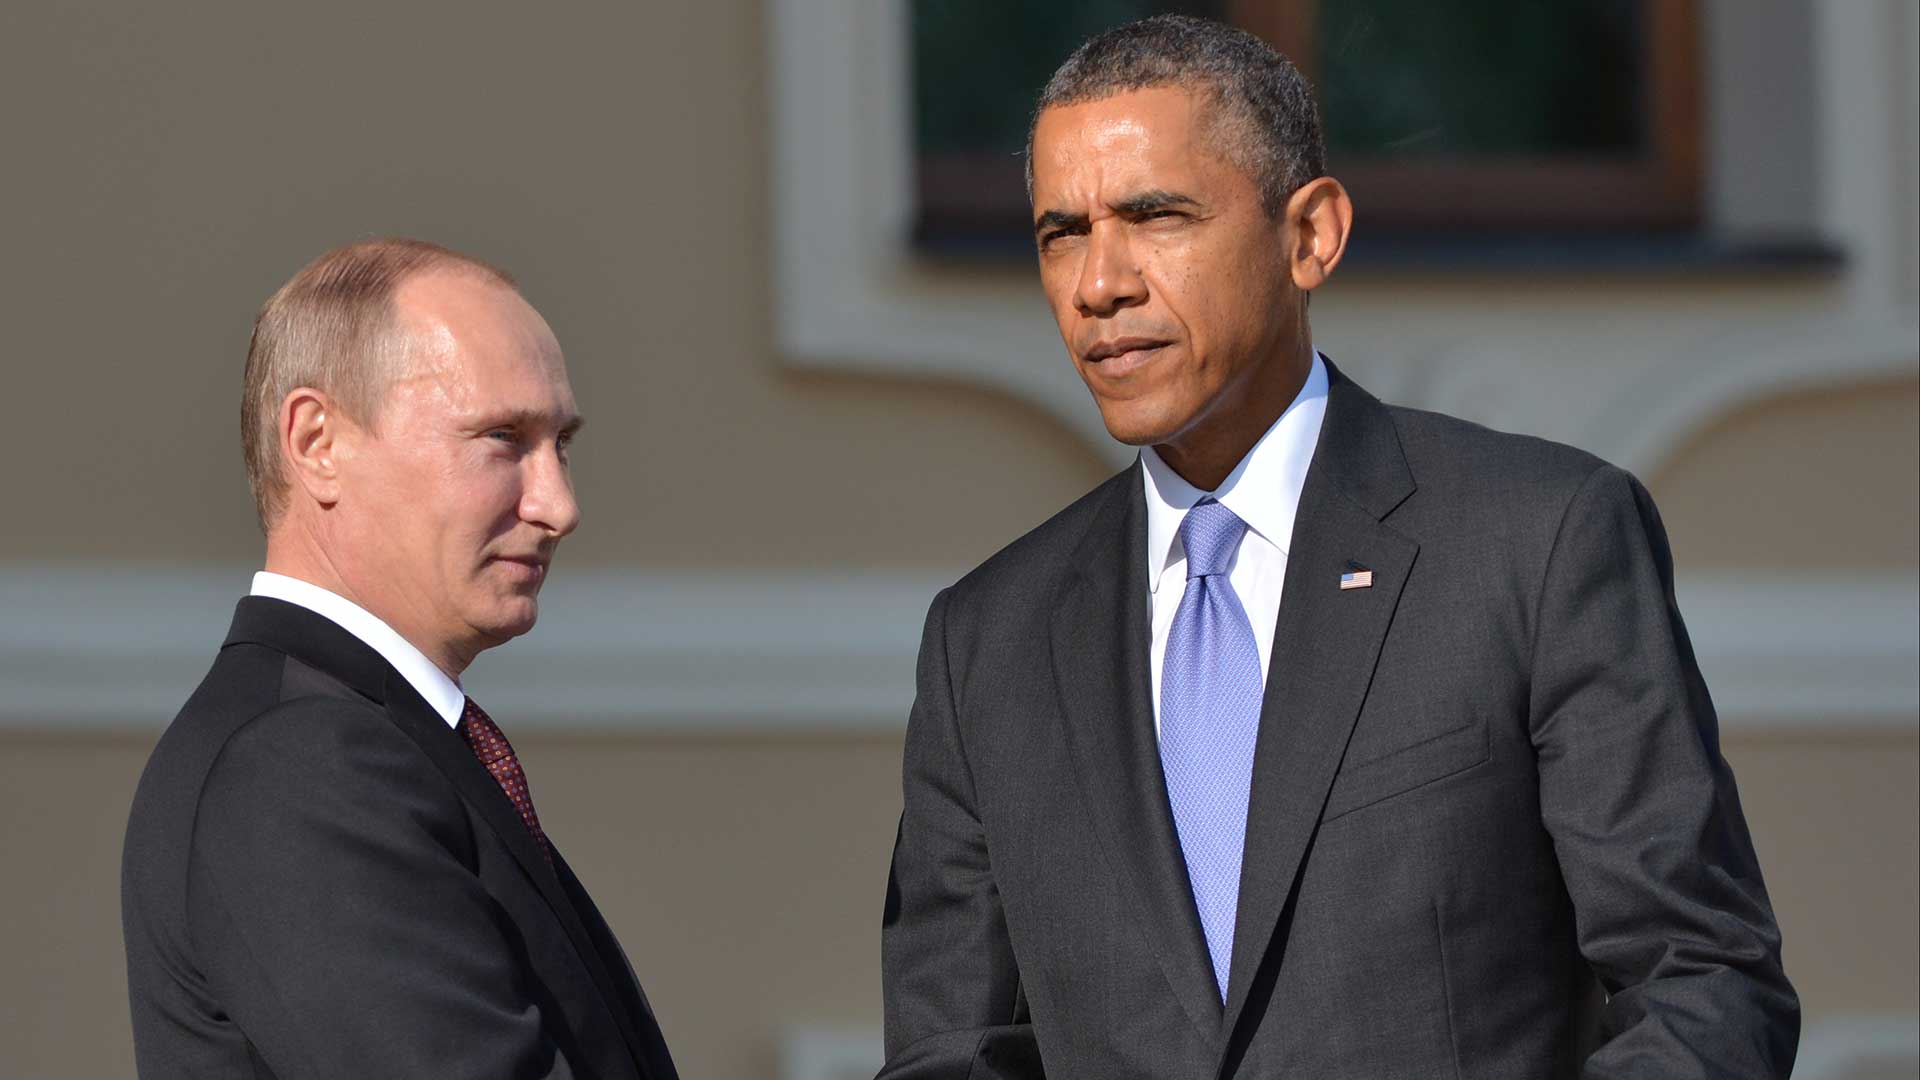 "Físicamente no tenía nada de especial: bajo y compacto, con la complexión de un luchador", describió Obama a Vladimir Putin. (Getty Images)